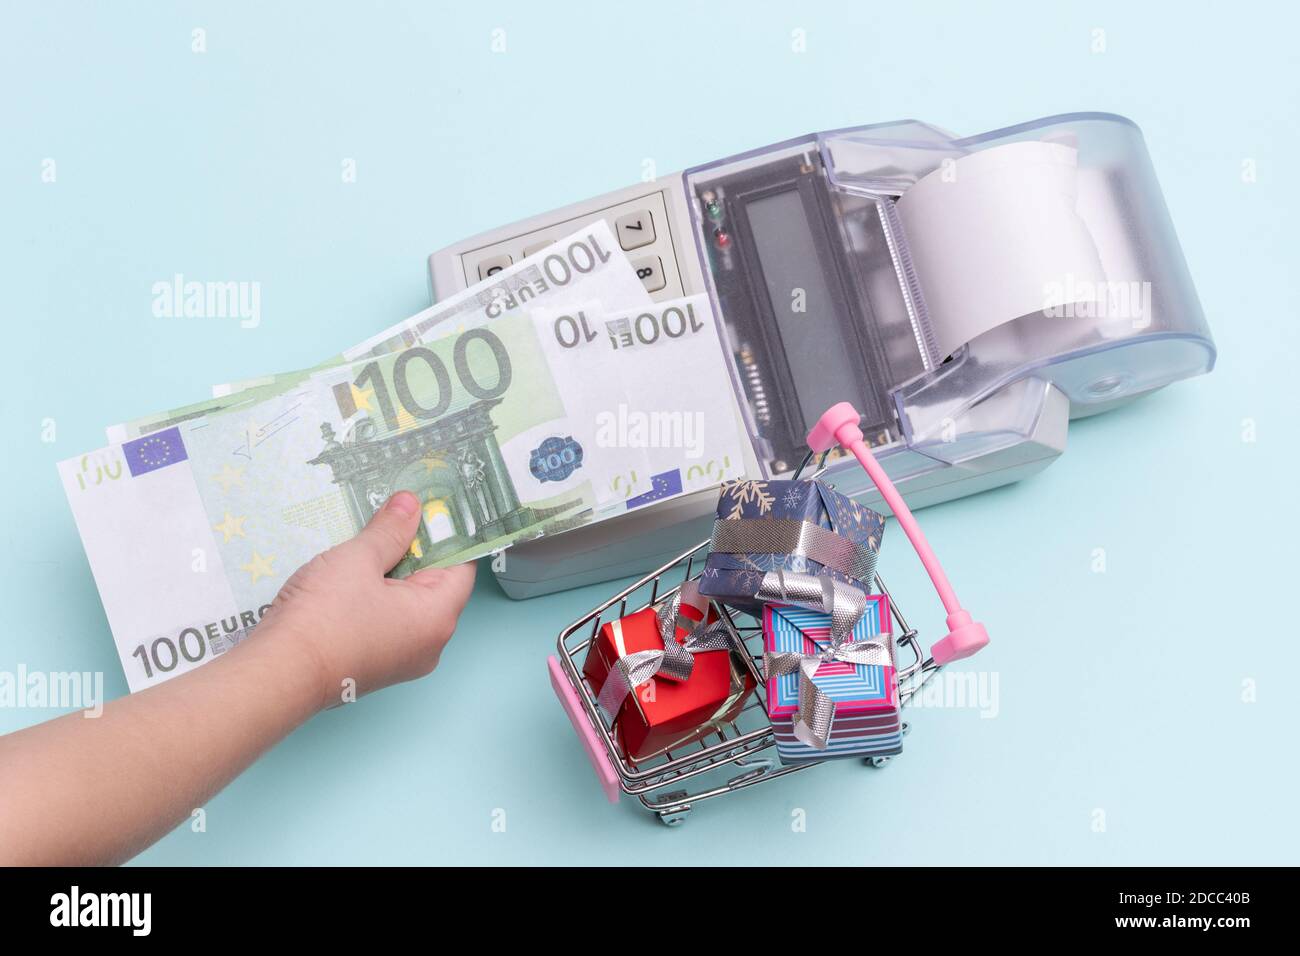 Primo piano di una mano di un bambino che tiene una copia di banconote da 100 euro sopra il registratore di cassa per l'acquisto di scatole di regali in un carrello su sfondo blu, t Foto Stock